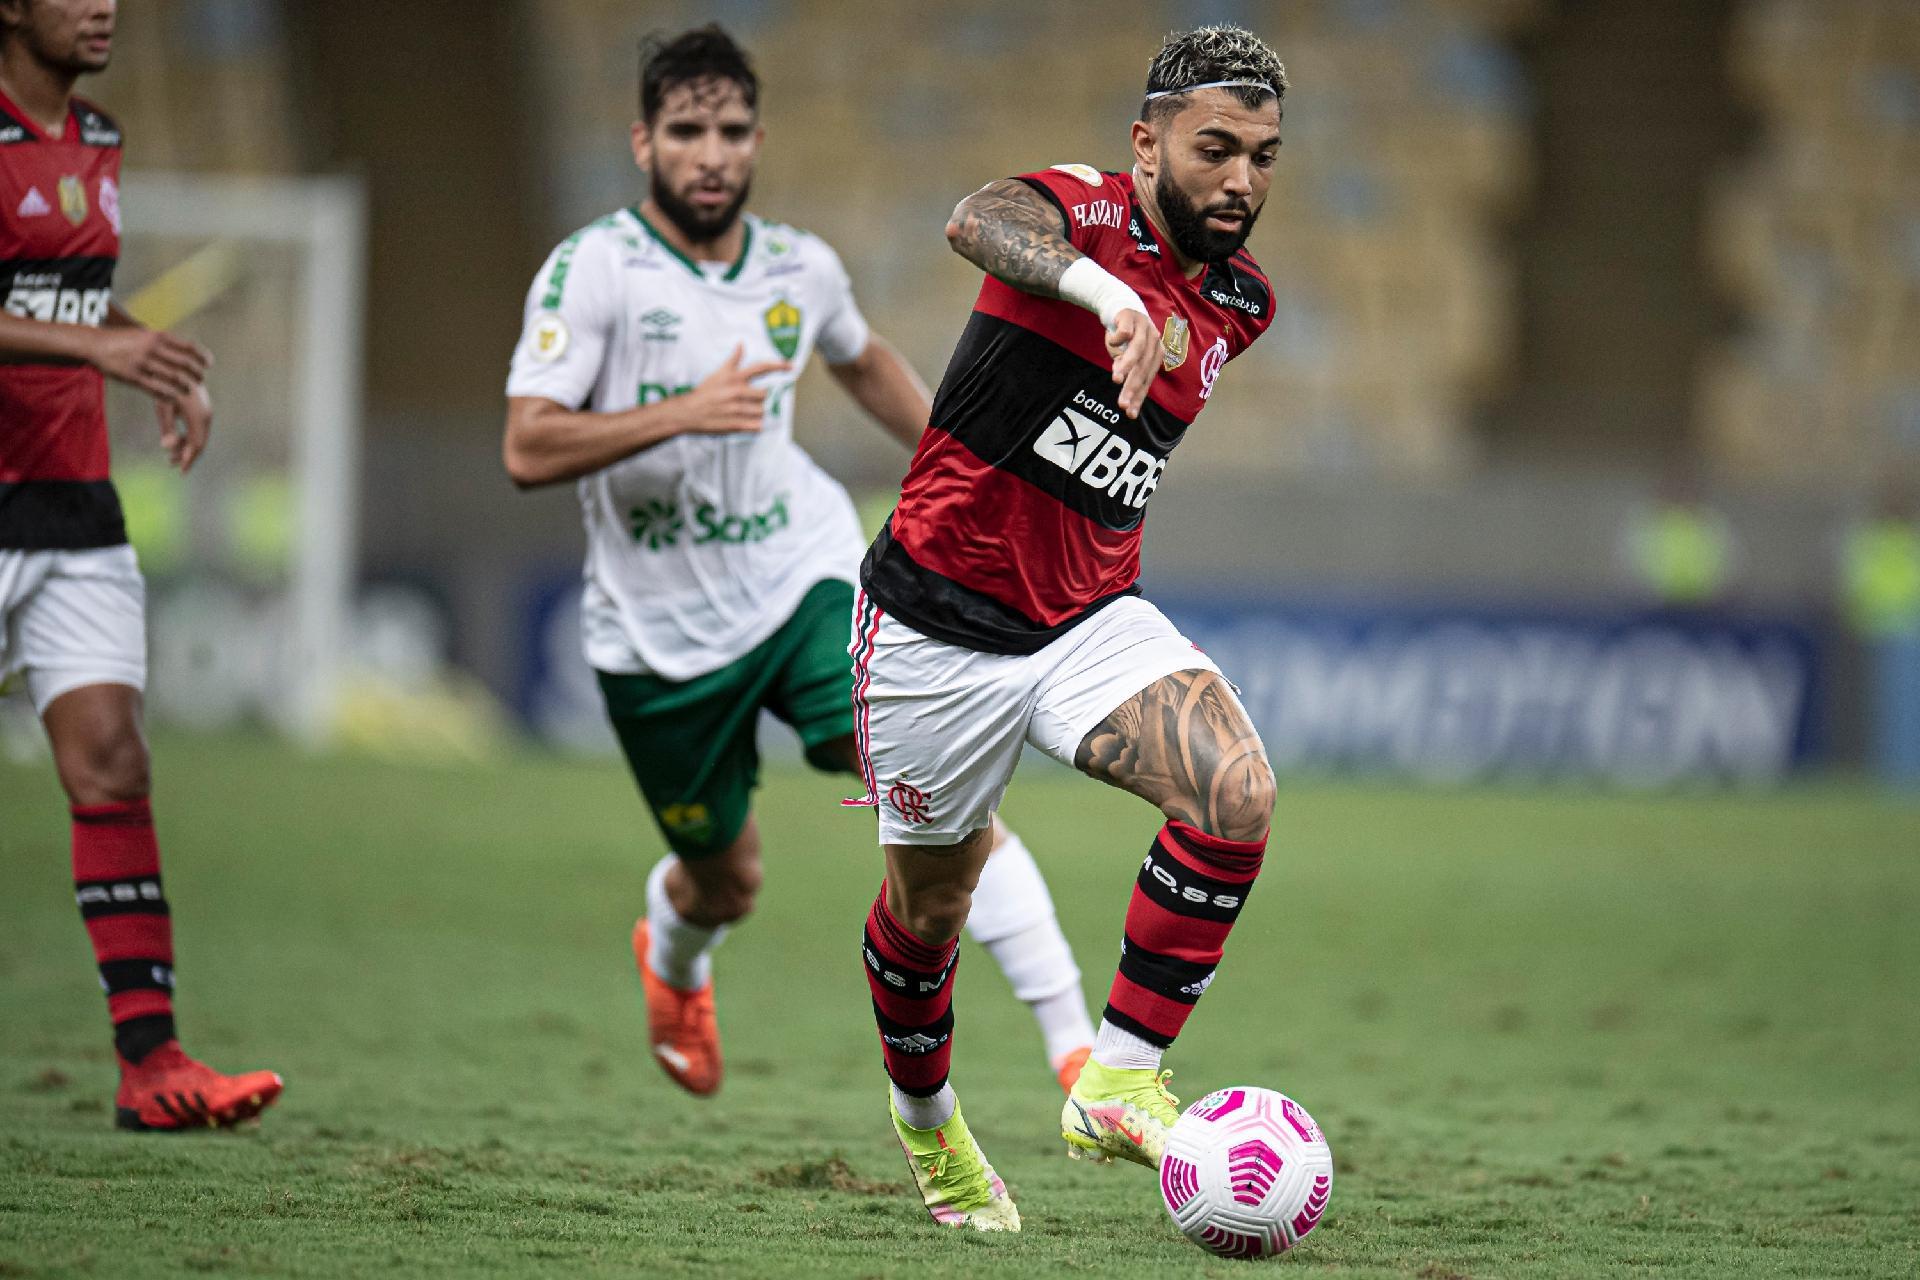 OPINIÃO: Se o Flamengo jogar assim contra o Athletico, fica preocupante